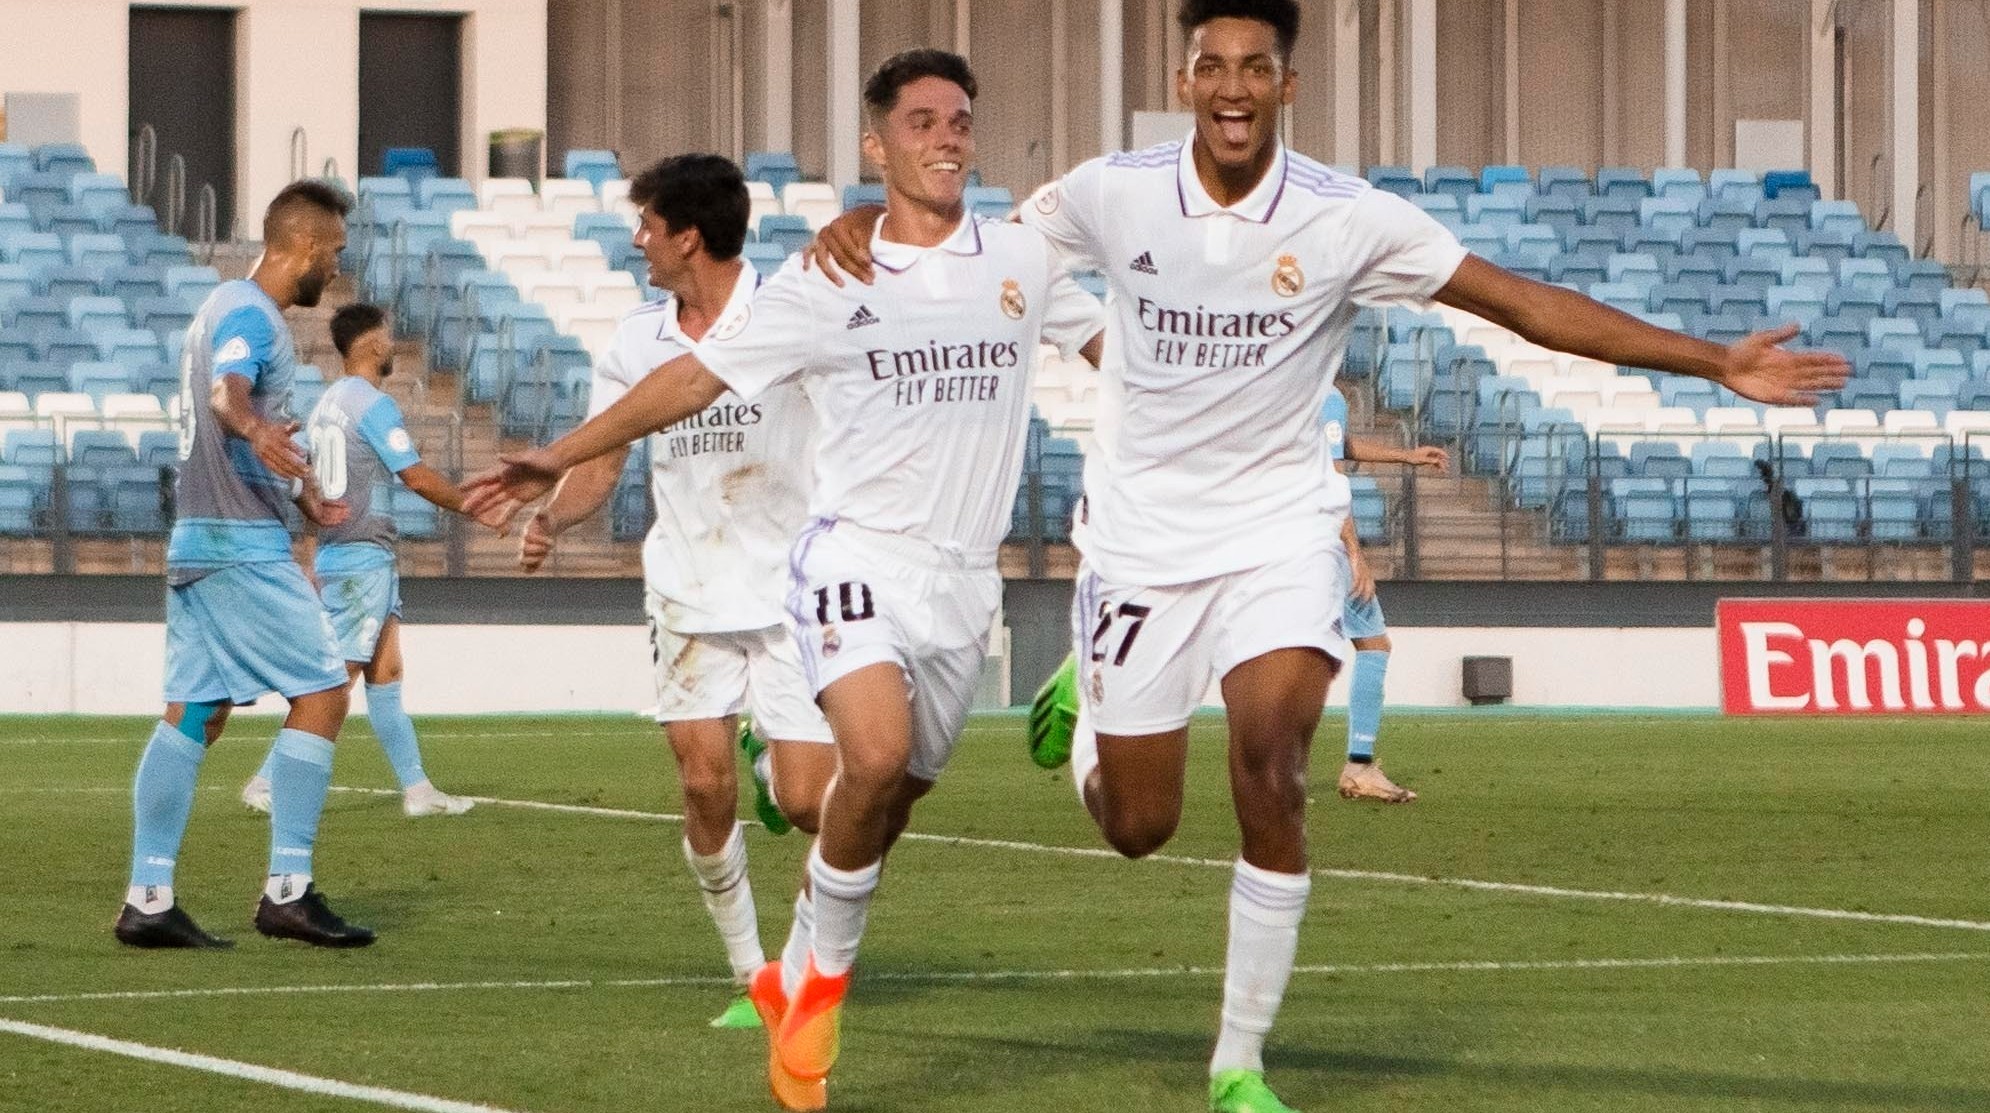 Álvaro Rodríguez (18) y Sergio Arribas (21), celebran un gol ante el Linense en el Di Stéfano.